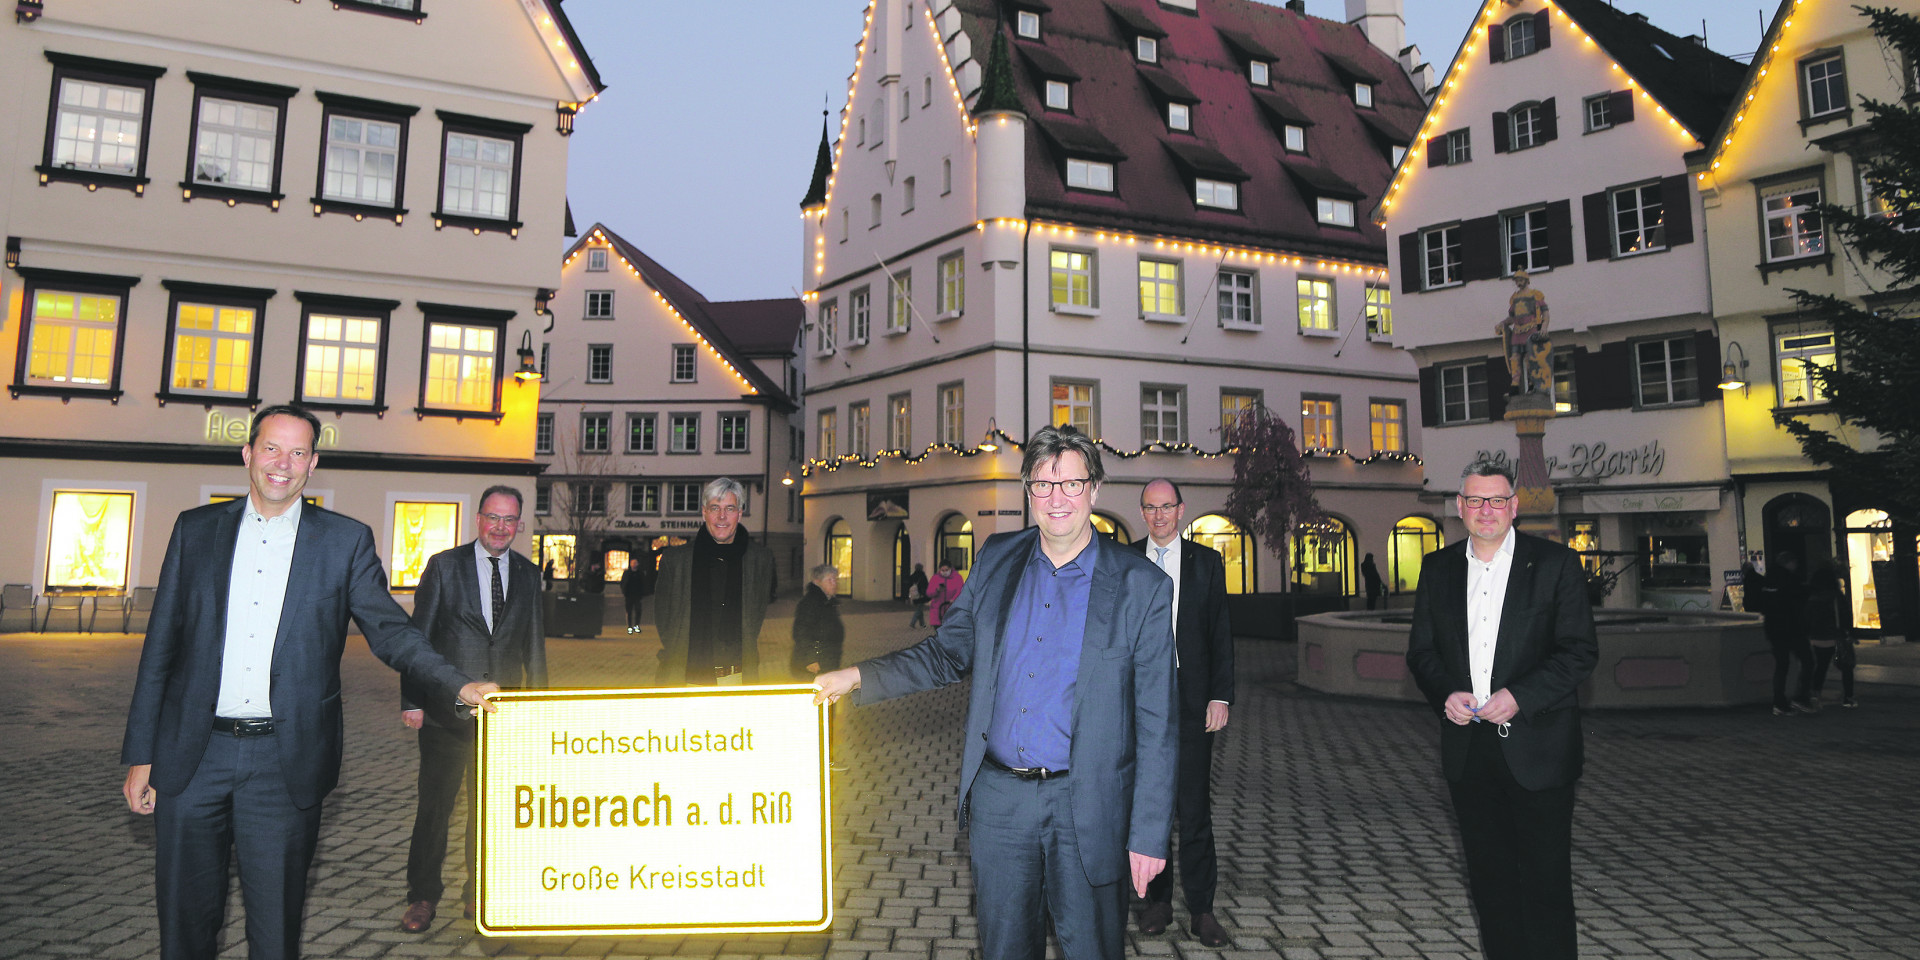 Stadt Biberach: Auf dem Weg zur Hochschulstadt